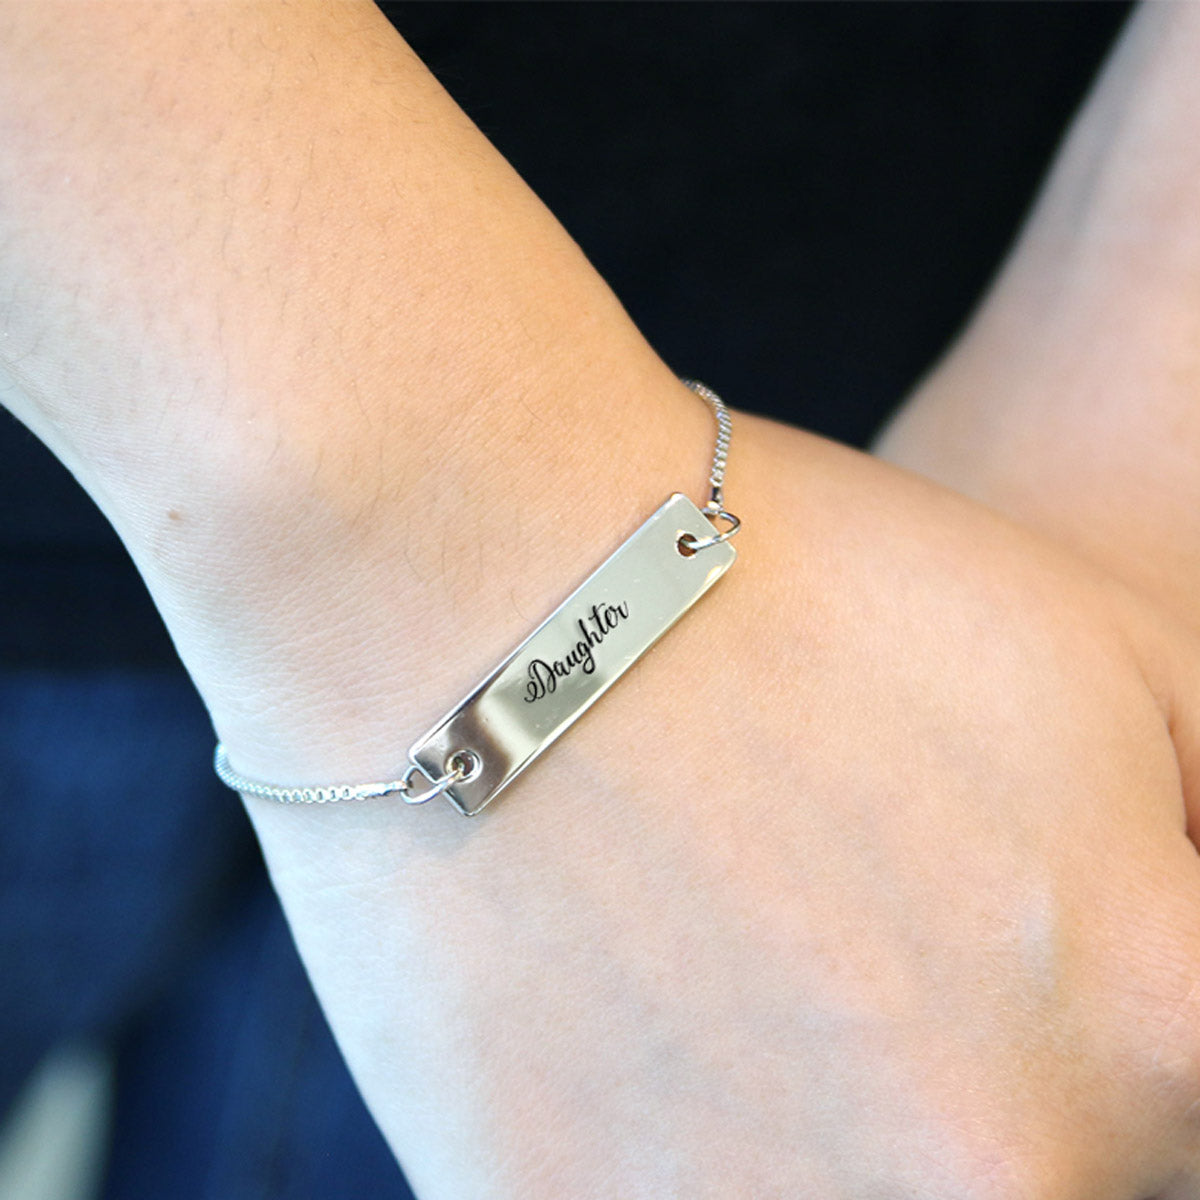 Silver Daughter - Script Adjustable Bar Bracelet